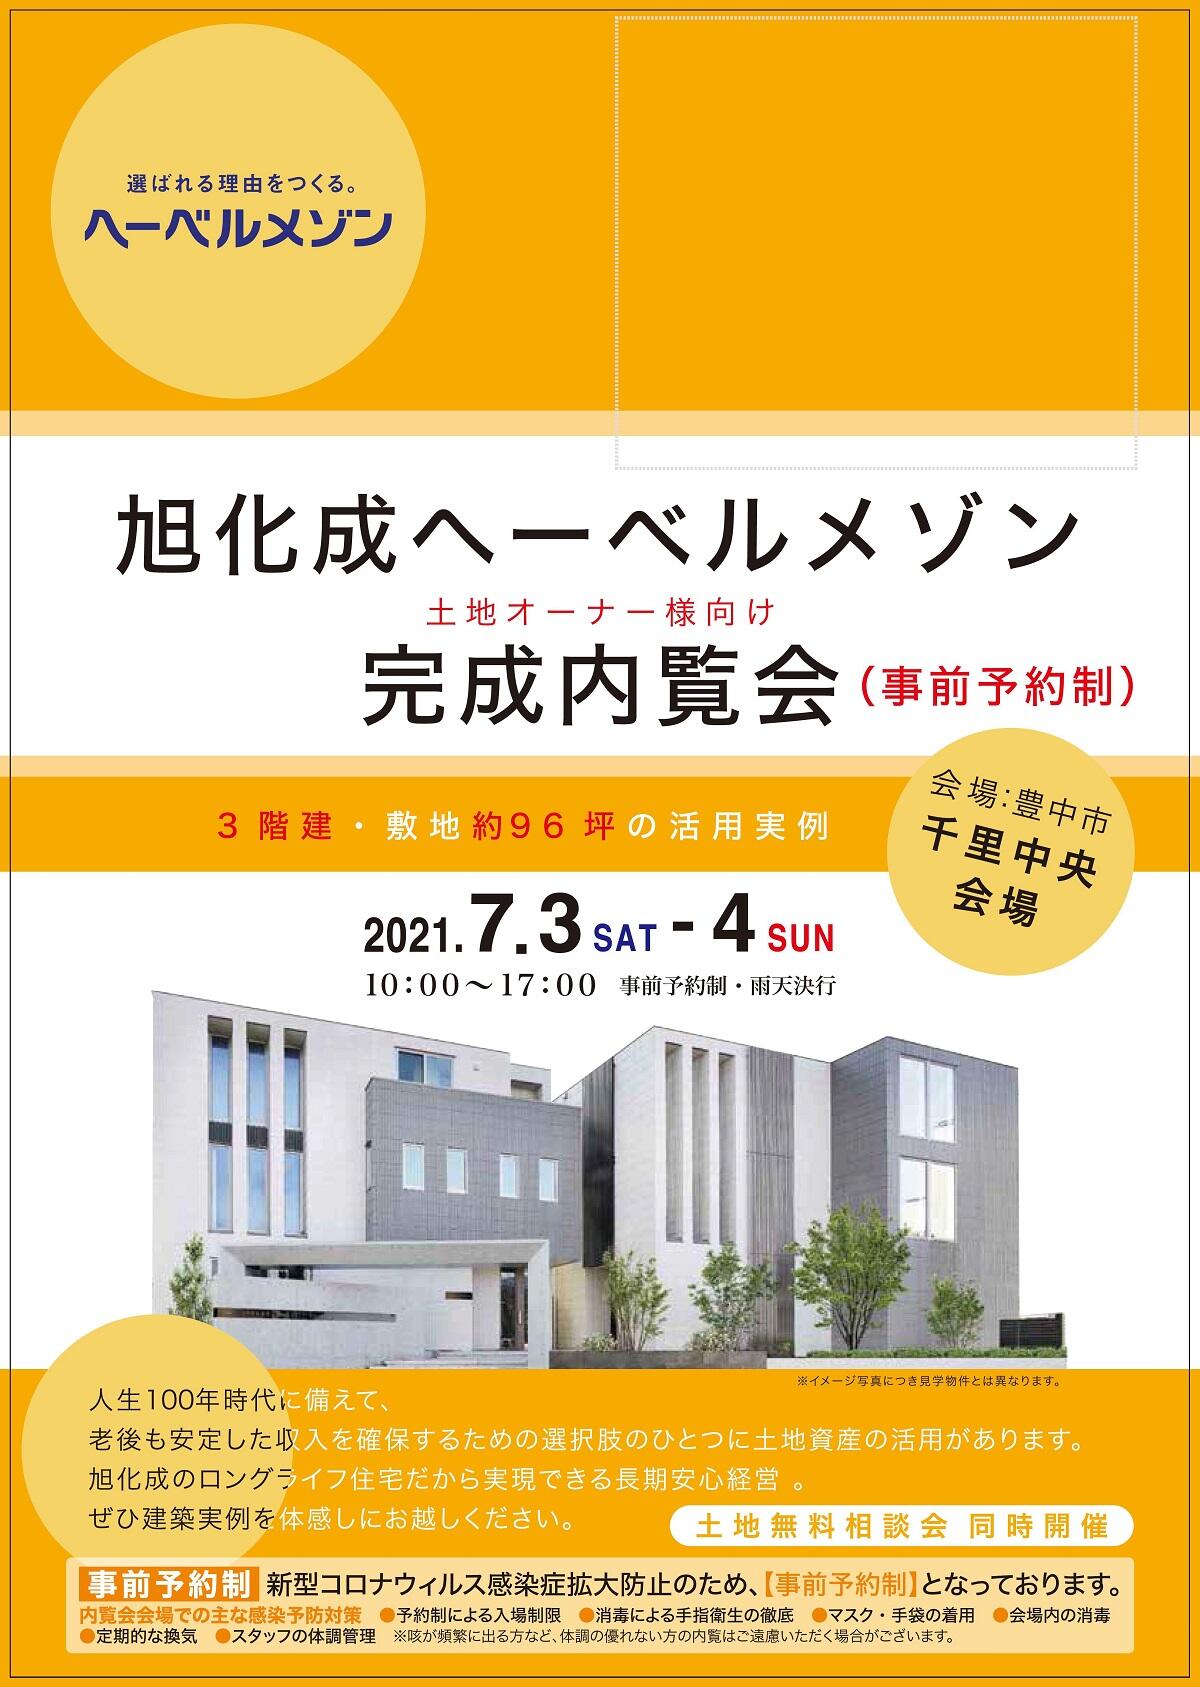 https://www.asahi-kasei.co.jp/maison/hebelplaza/blog/18/osaka/item/2021/20210628-2.jpg